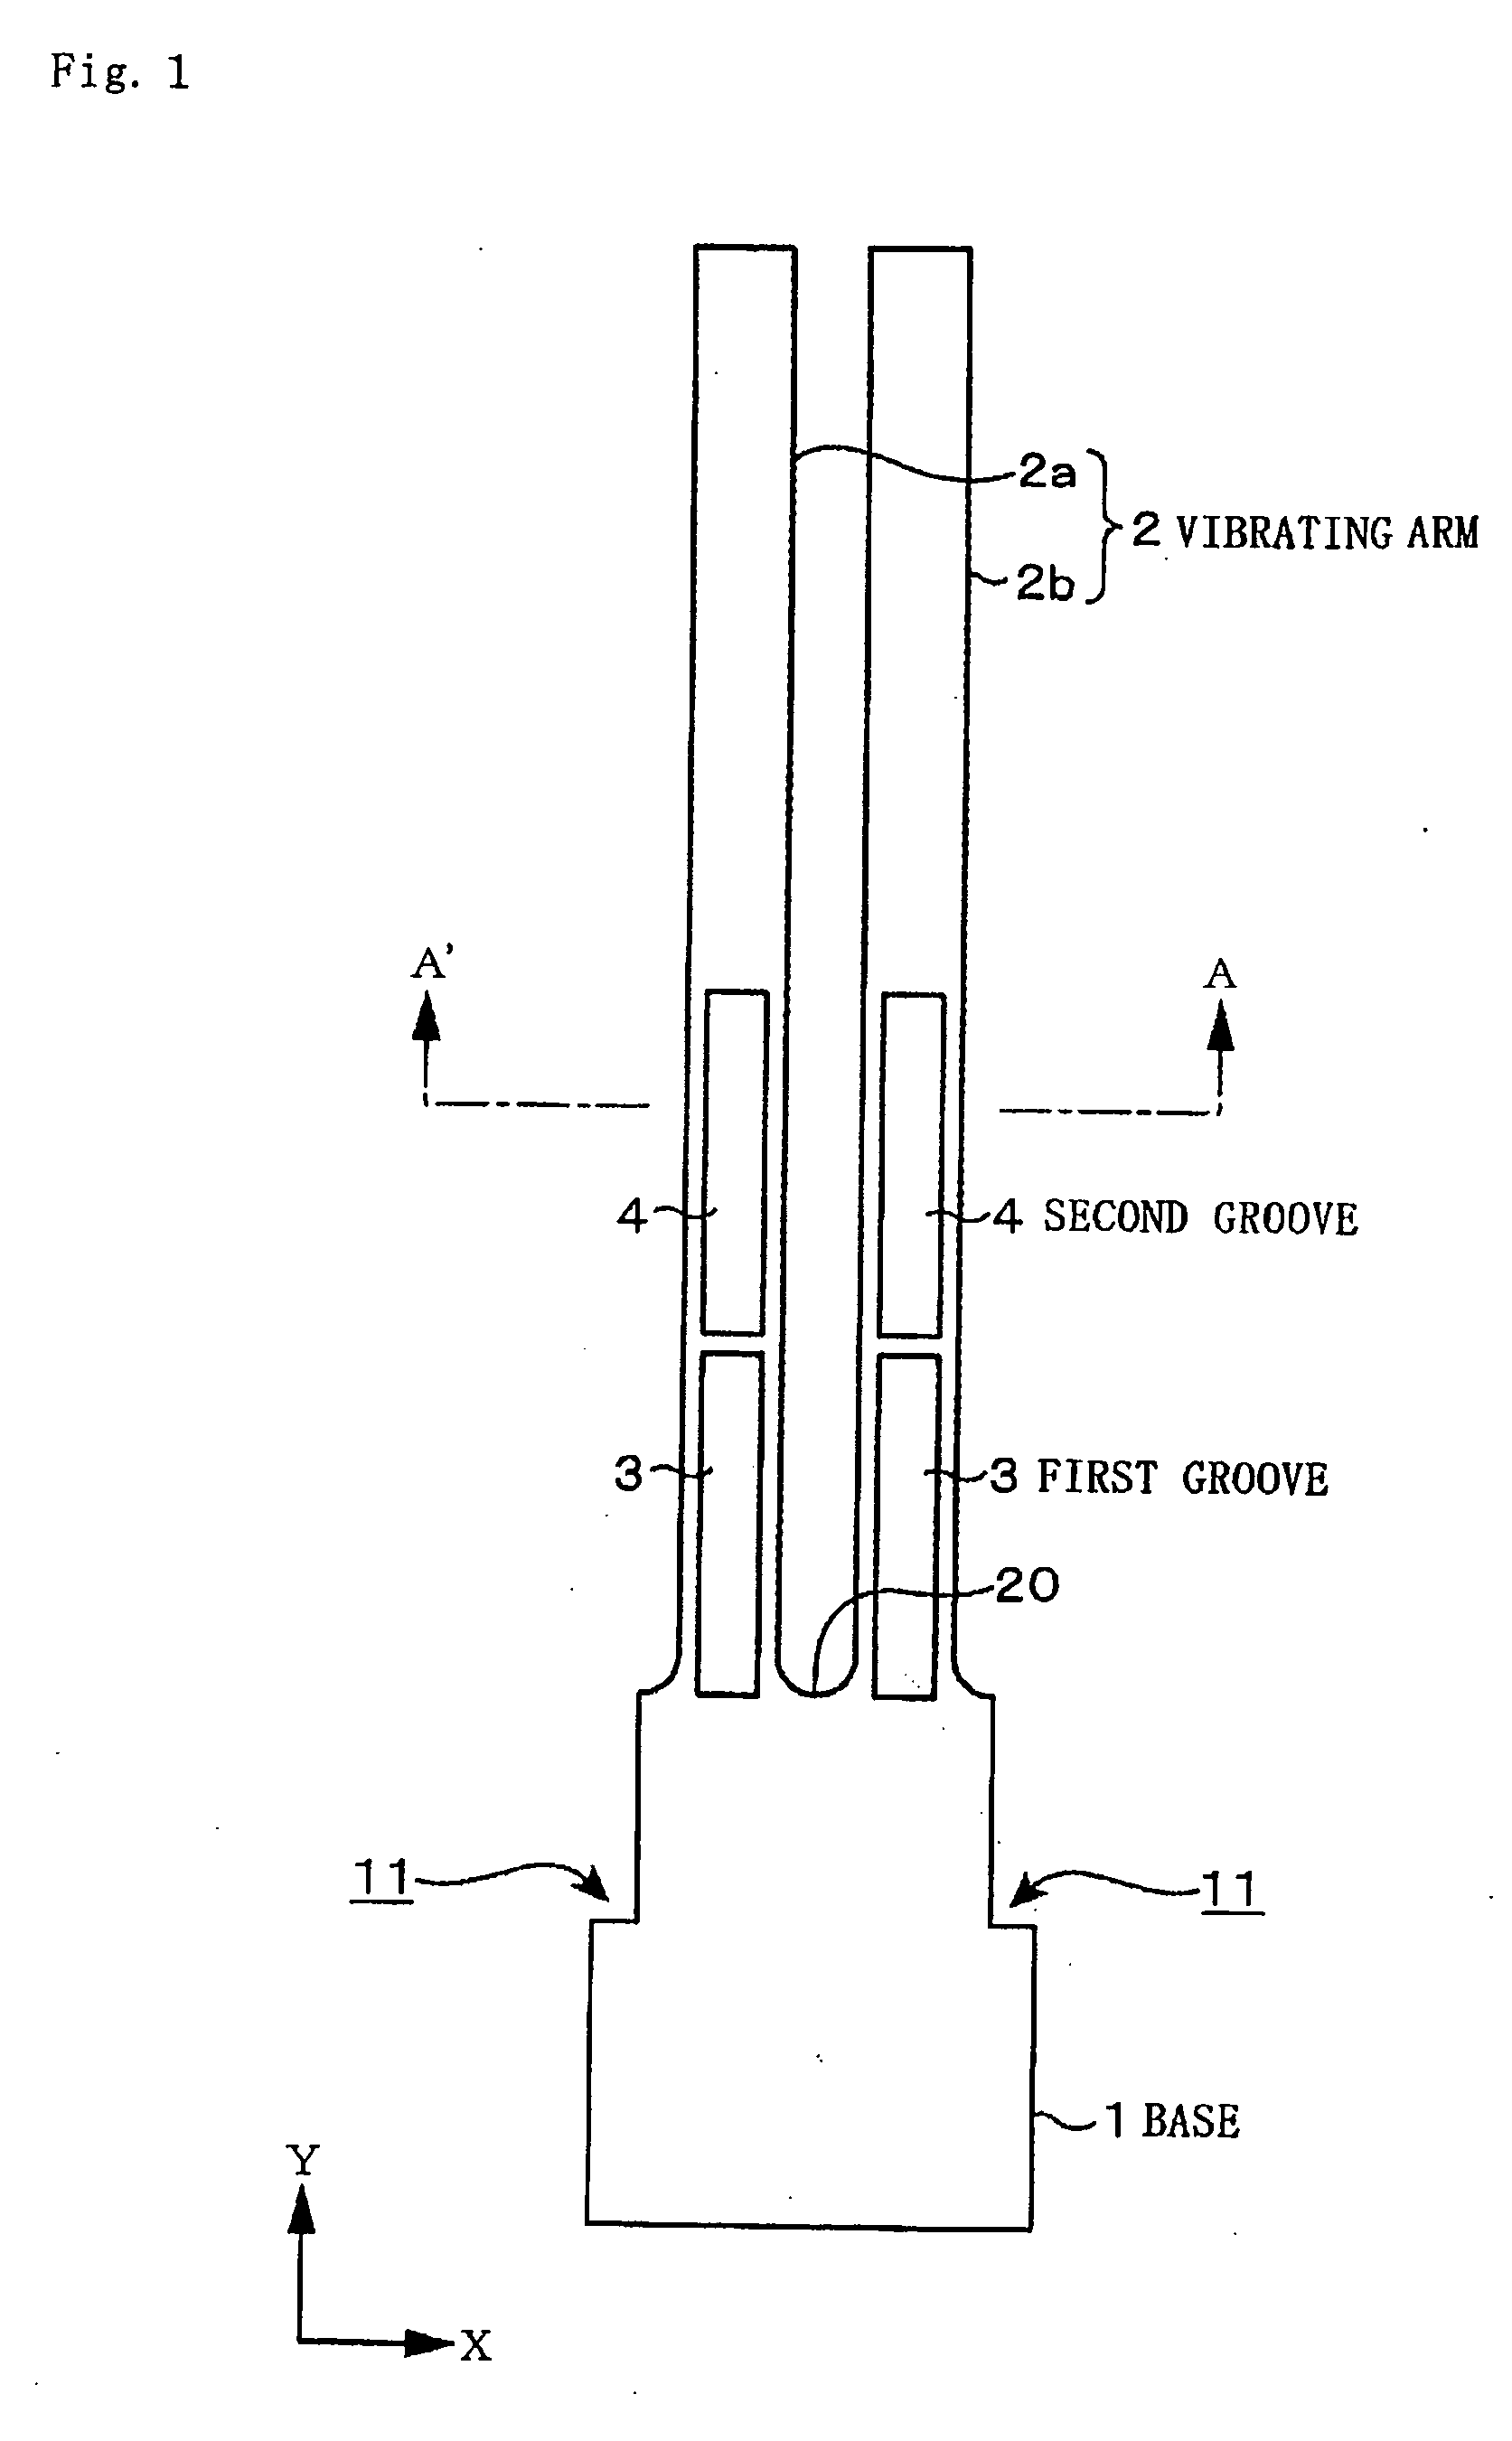 Piezoelectric vibrator